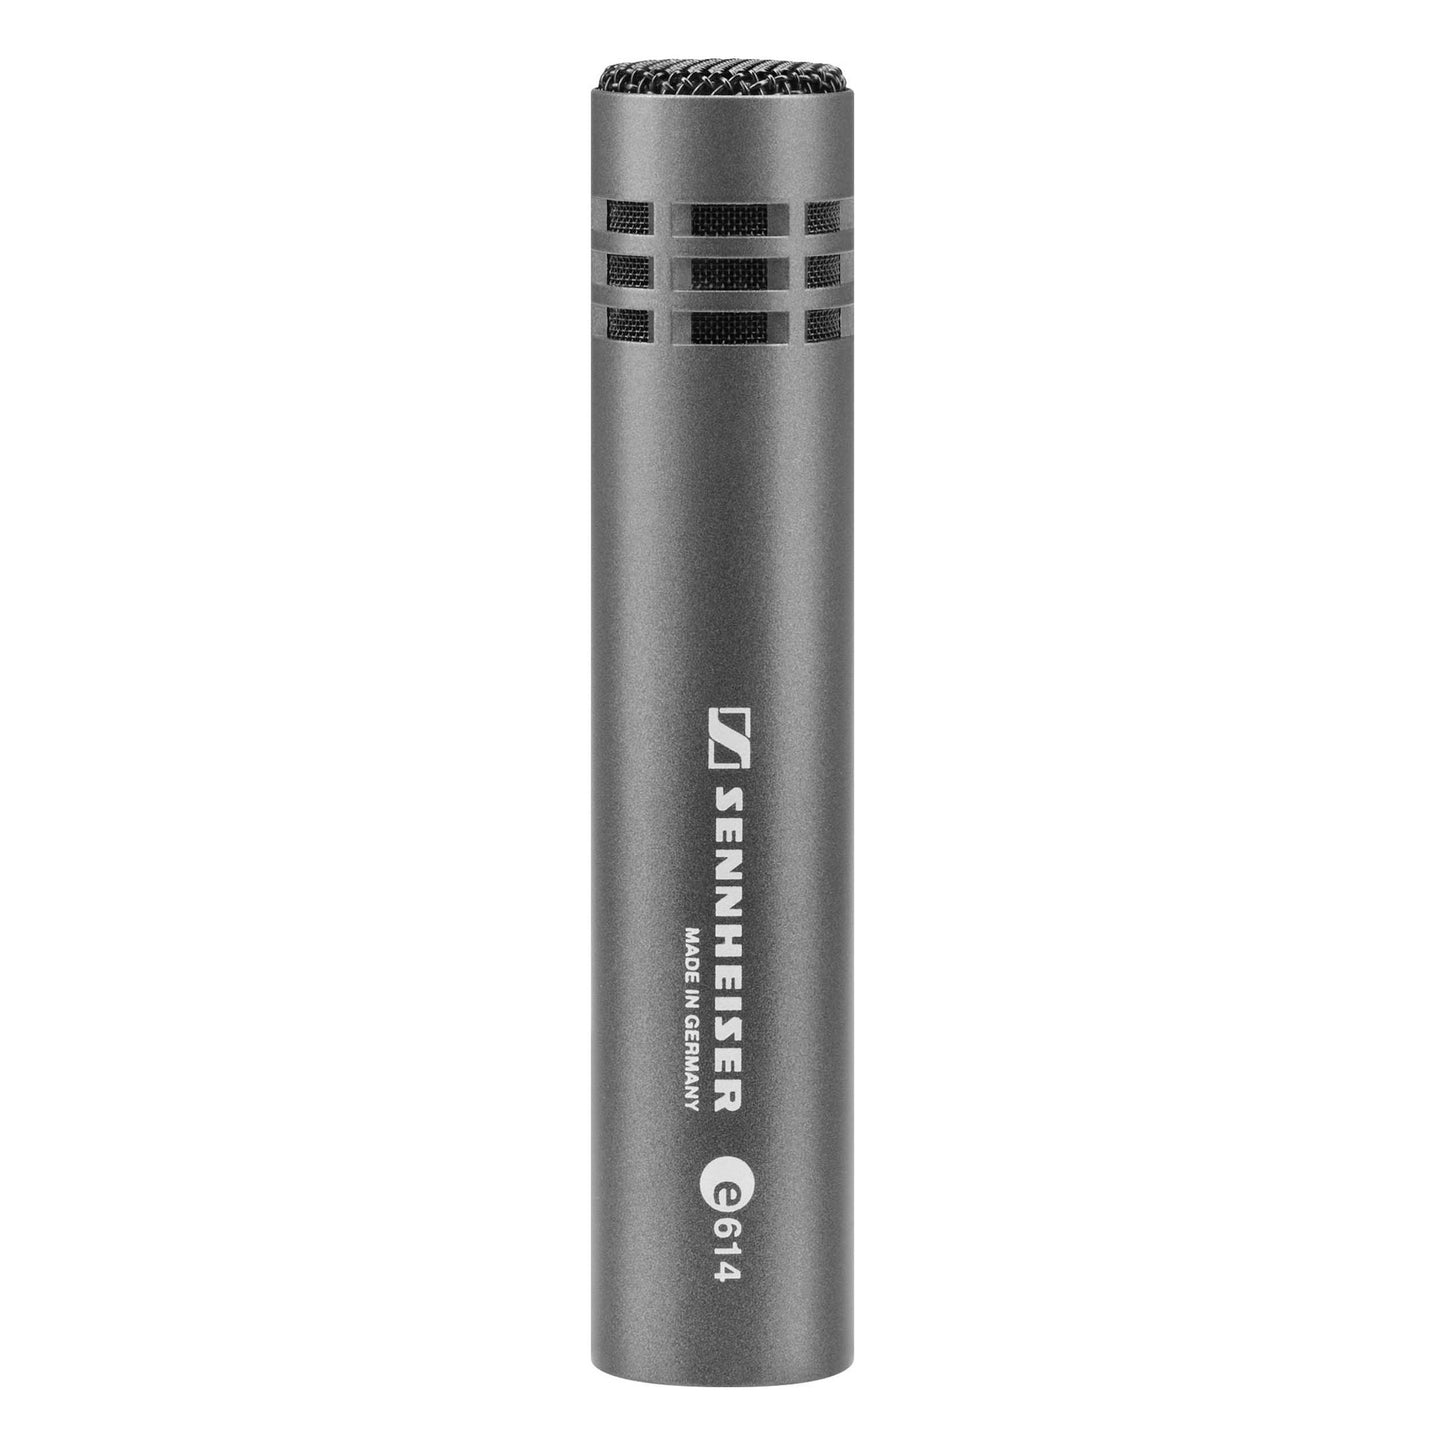 Sennheiser e614 Small-diaphragm Condenser Microphone